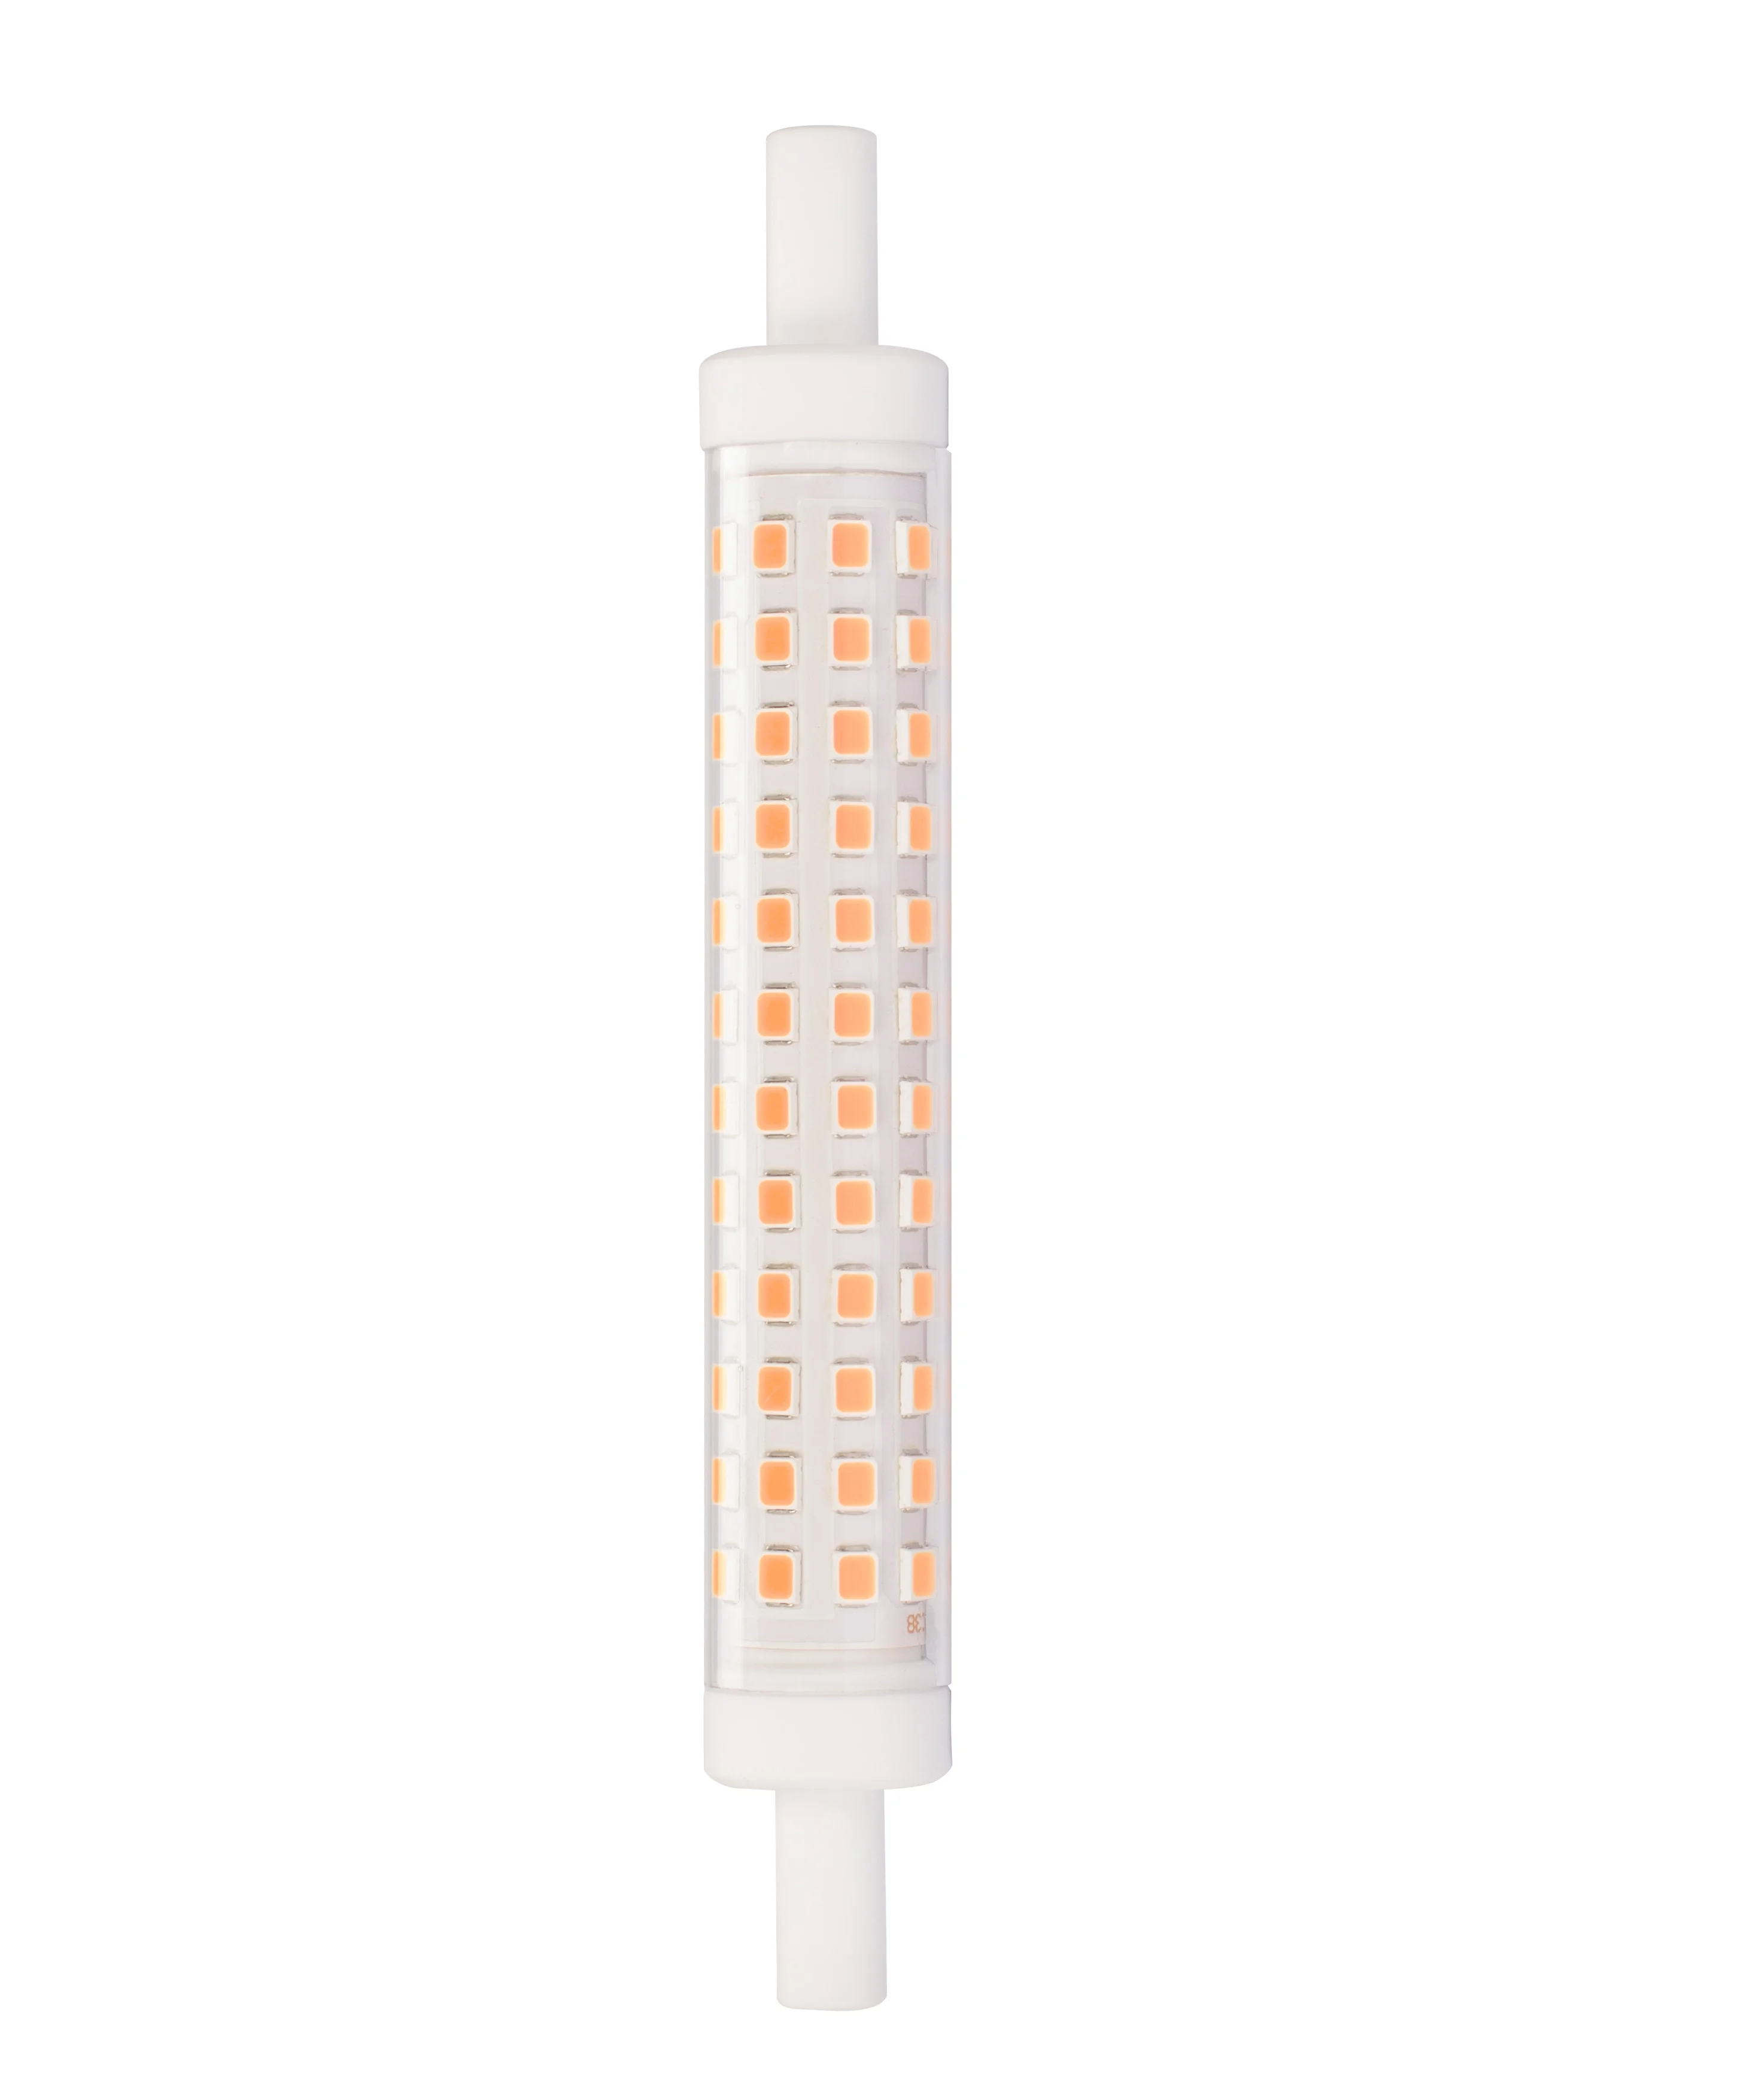 Baolight (Free sample for Europe) 10W 2700K Warm White 360Degree 118MM J Type Double Ended R7S LED Light Bulb